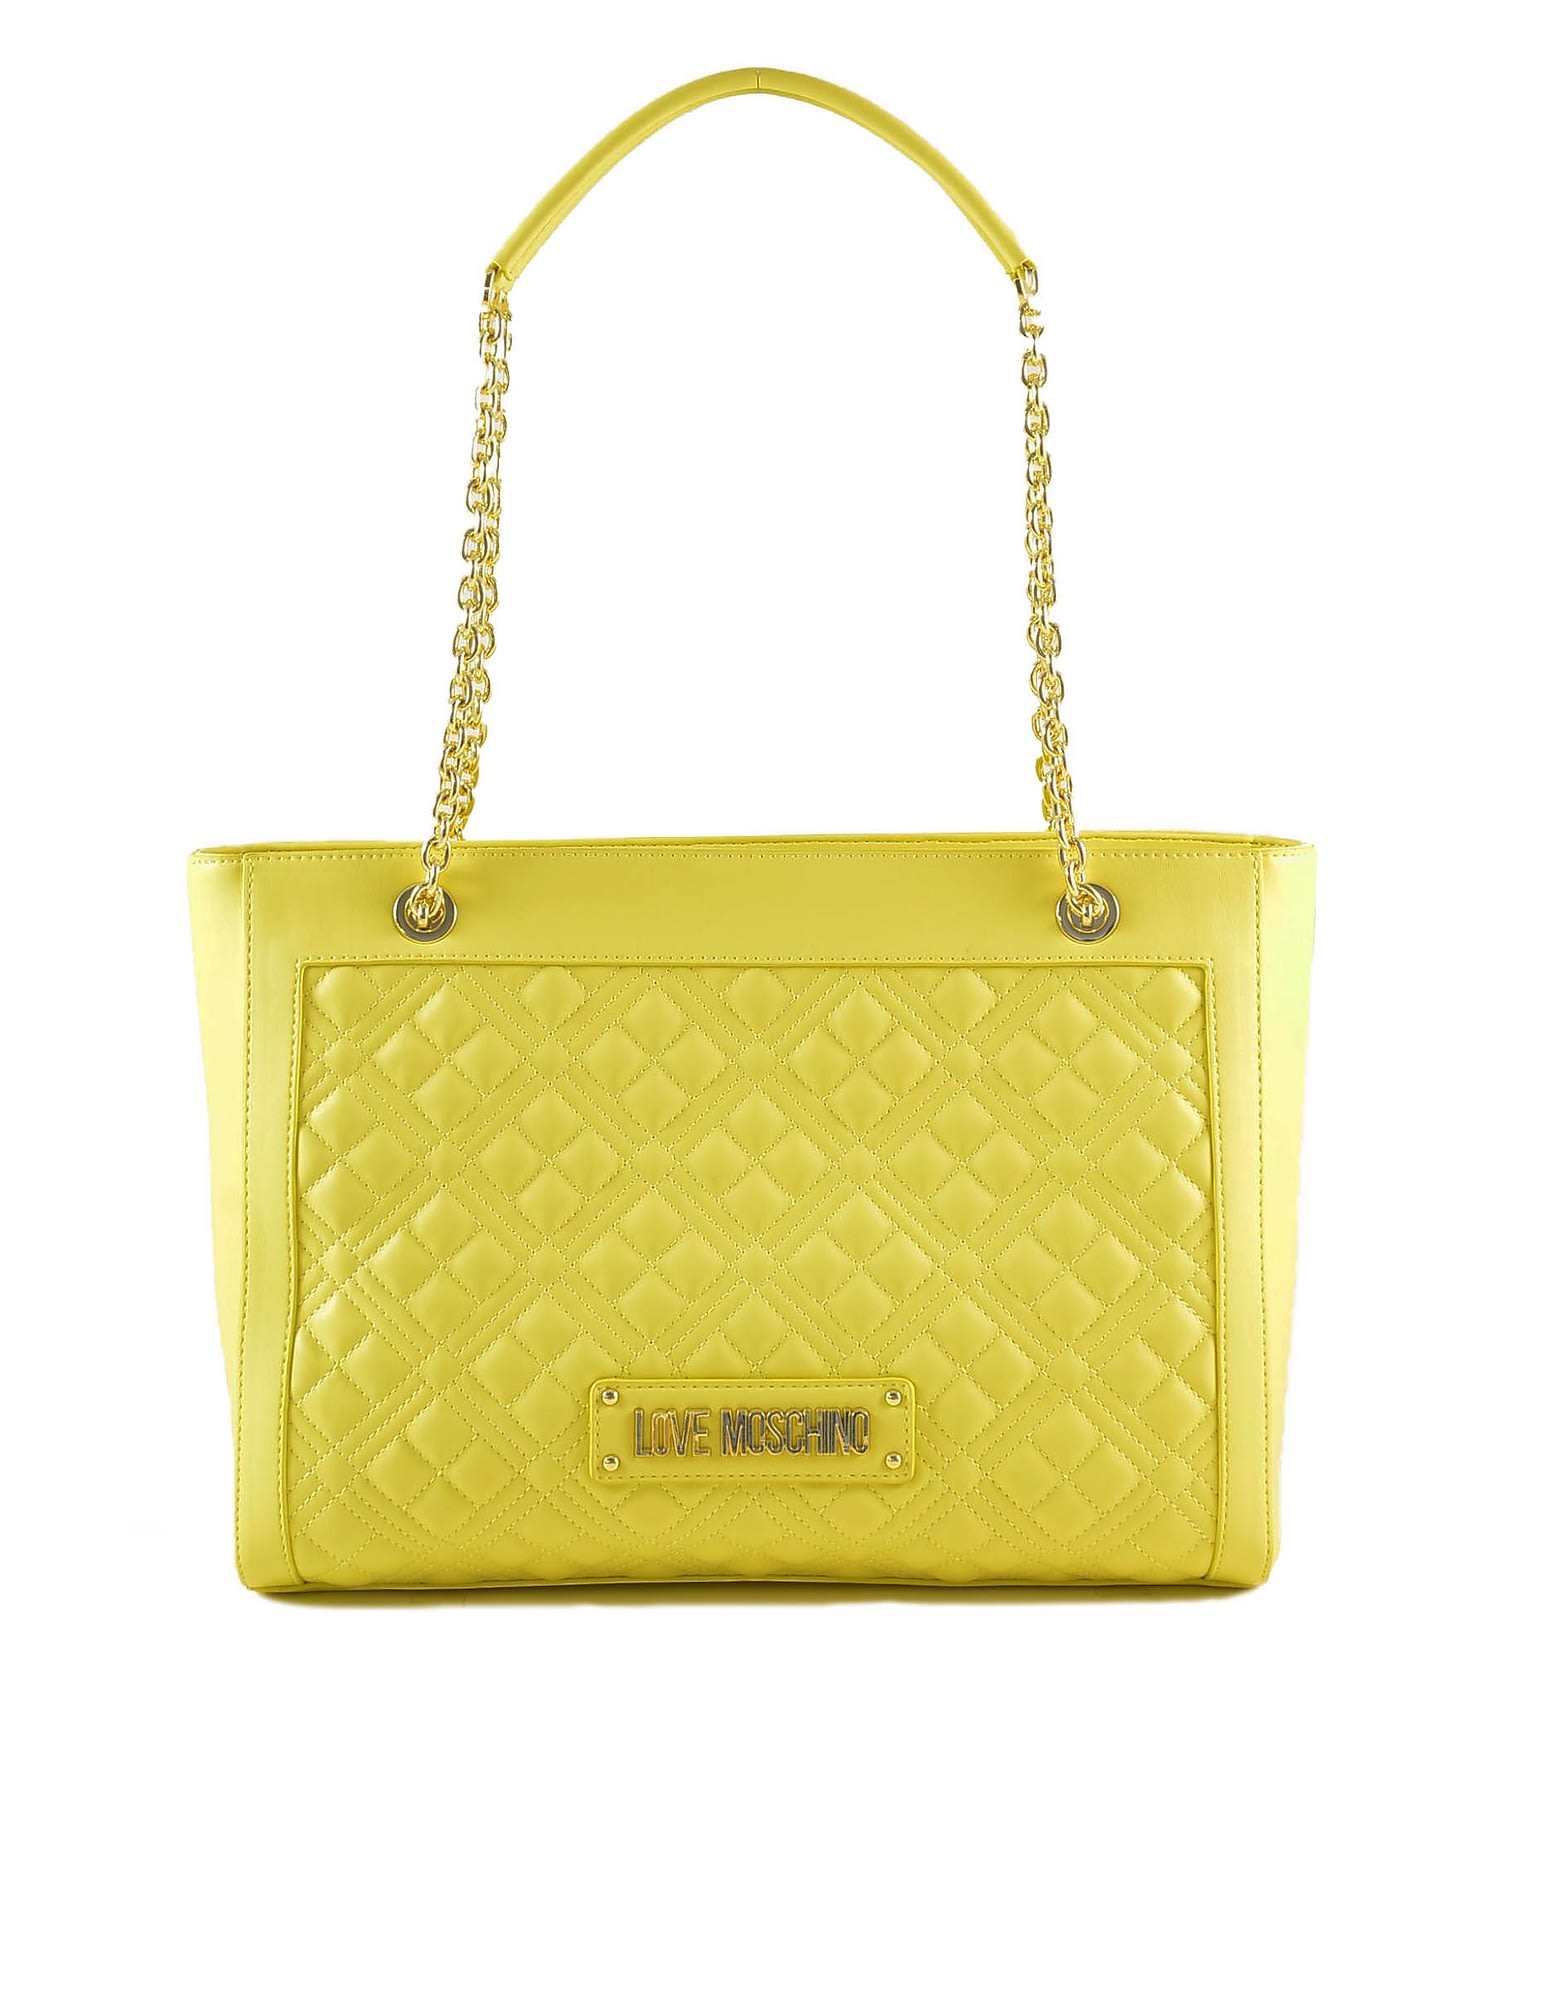 Love Moschino Womens Yellow Handbag